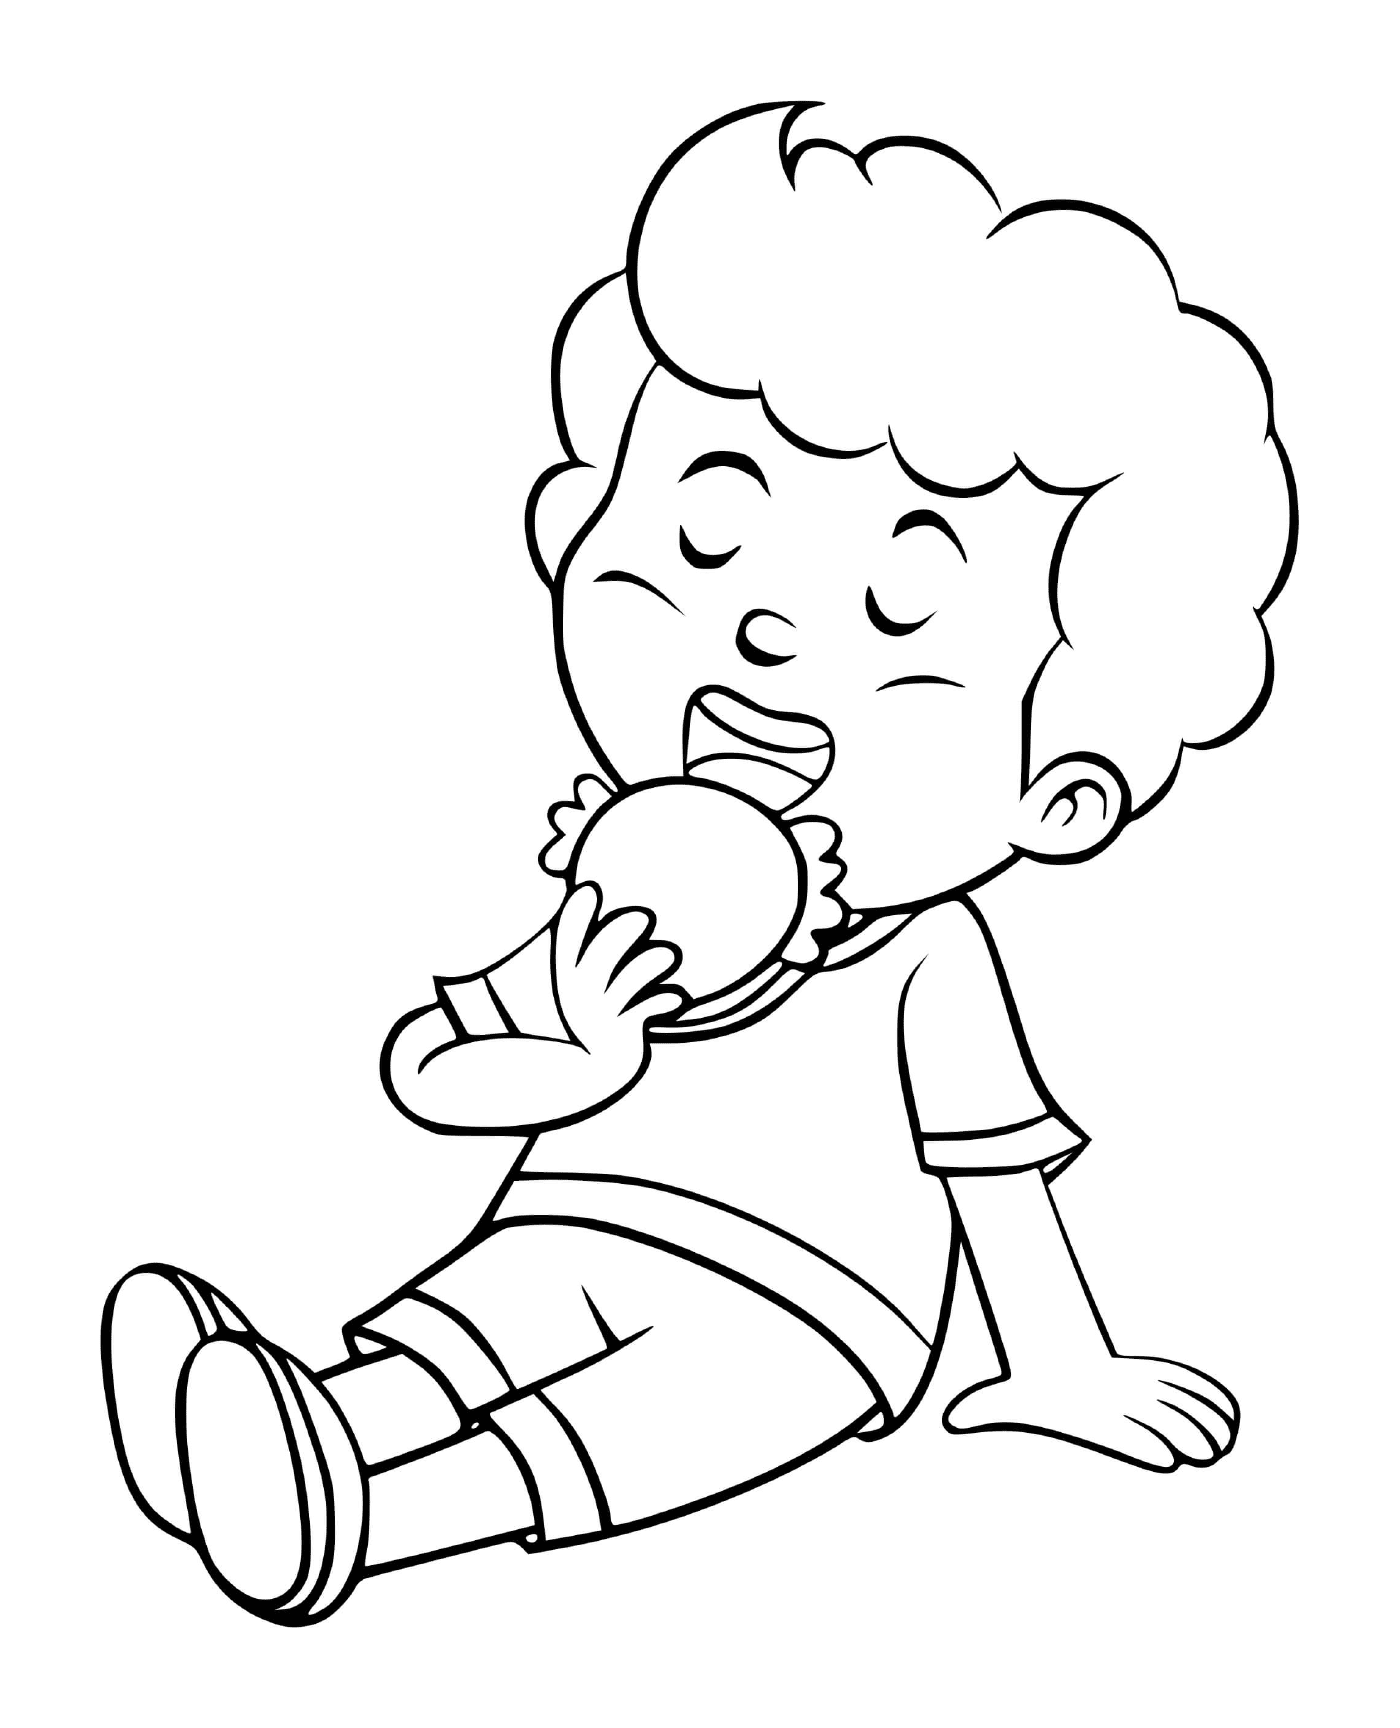  Un chico come su almuerzo con apetito 